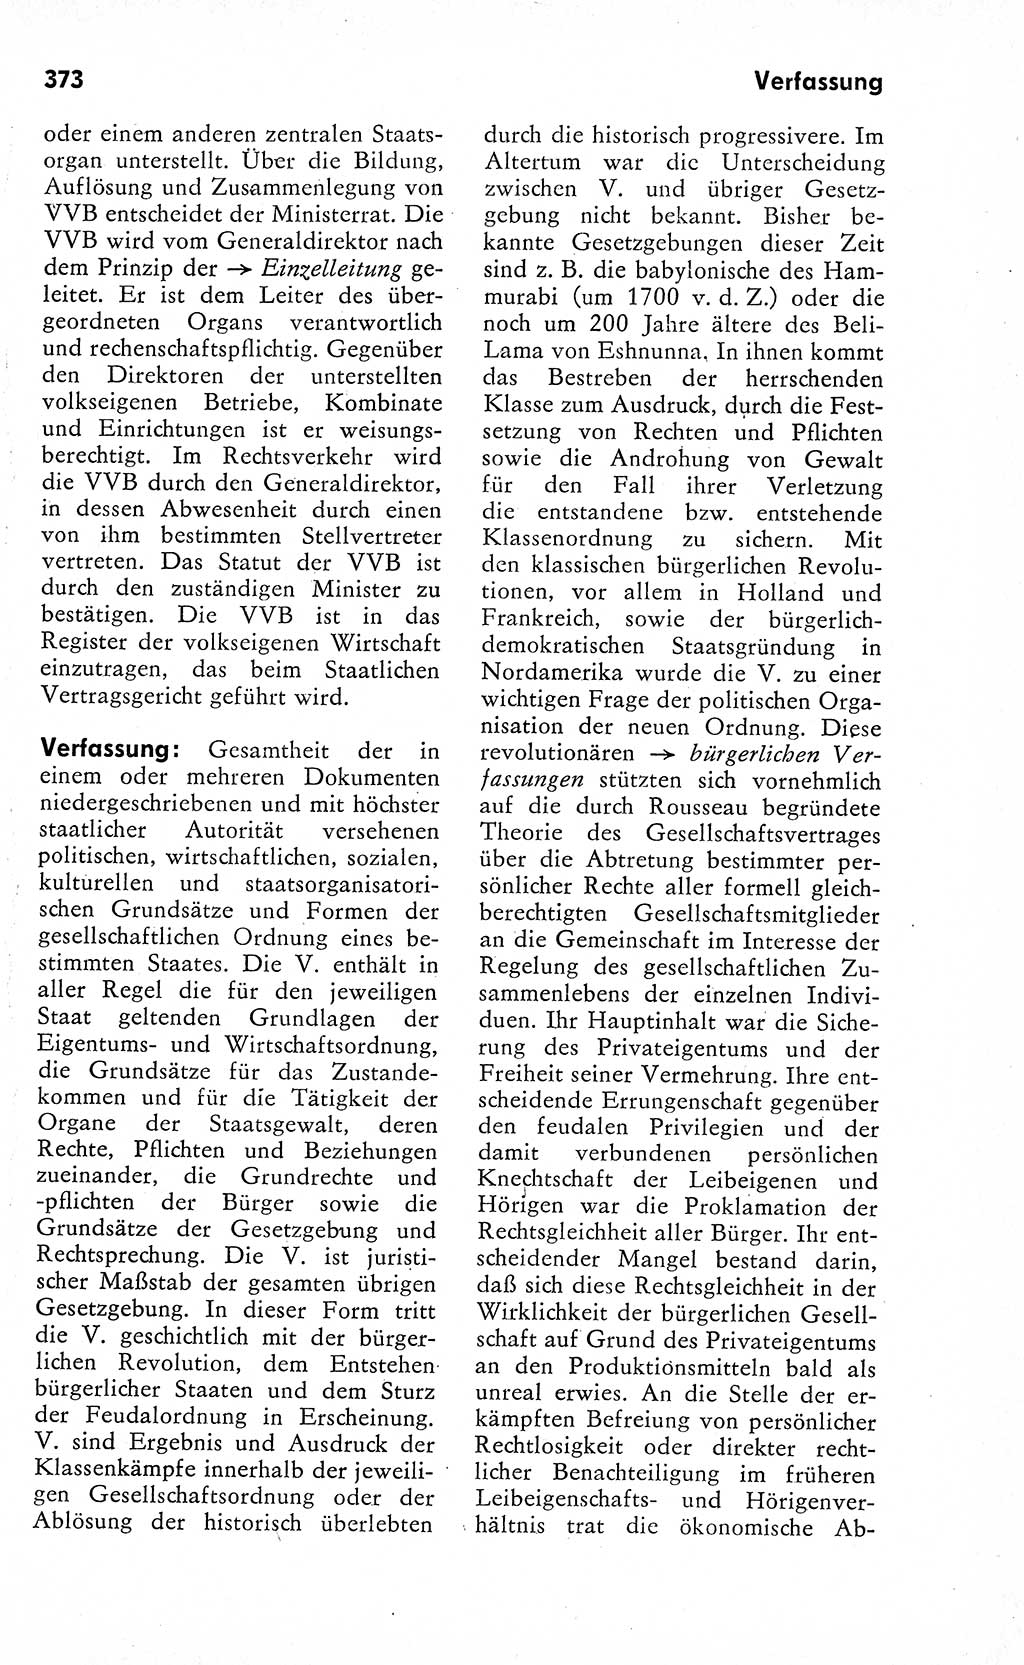 Wörterbuch zum sozialistischen Staat [Deutsche Demokratische Republik (DDR)] 1974, Seite 373 (Wb. soz. St. DDR 1974, S. 373)